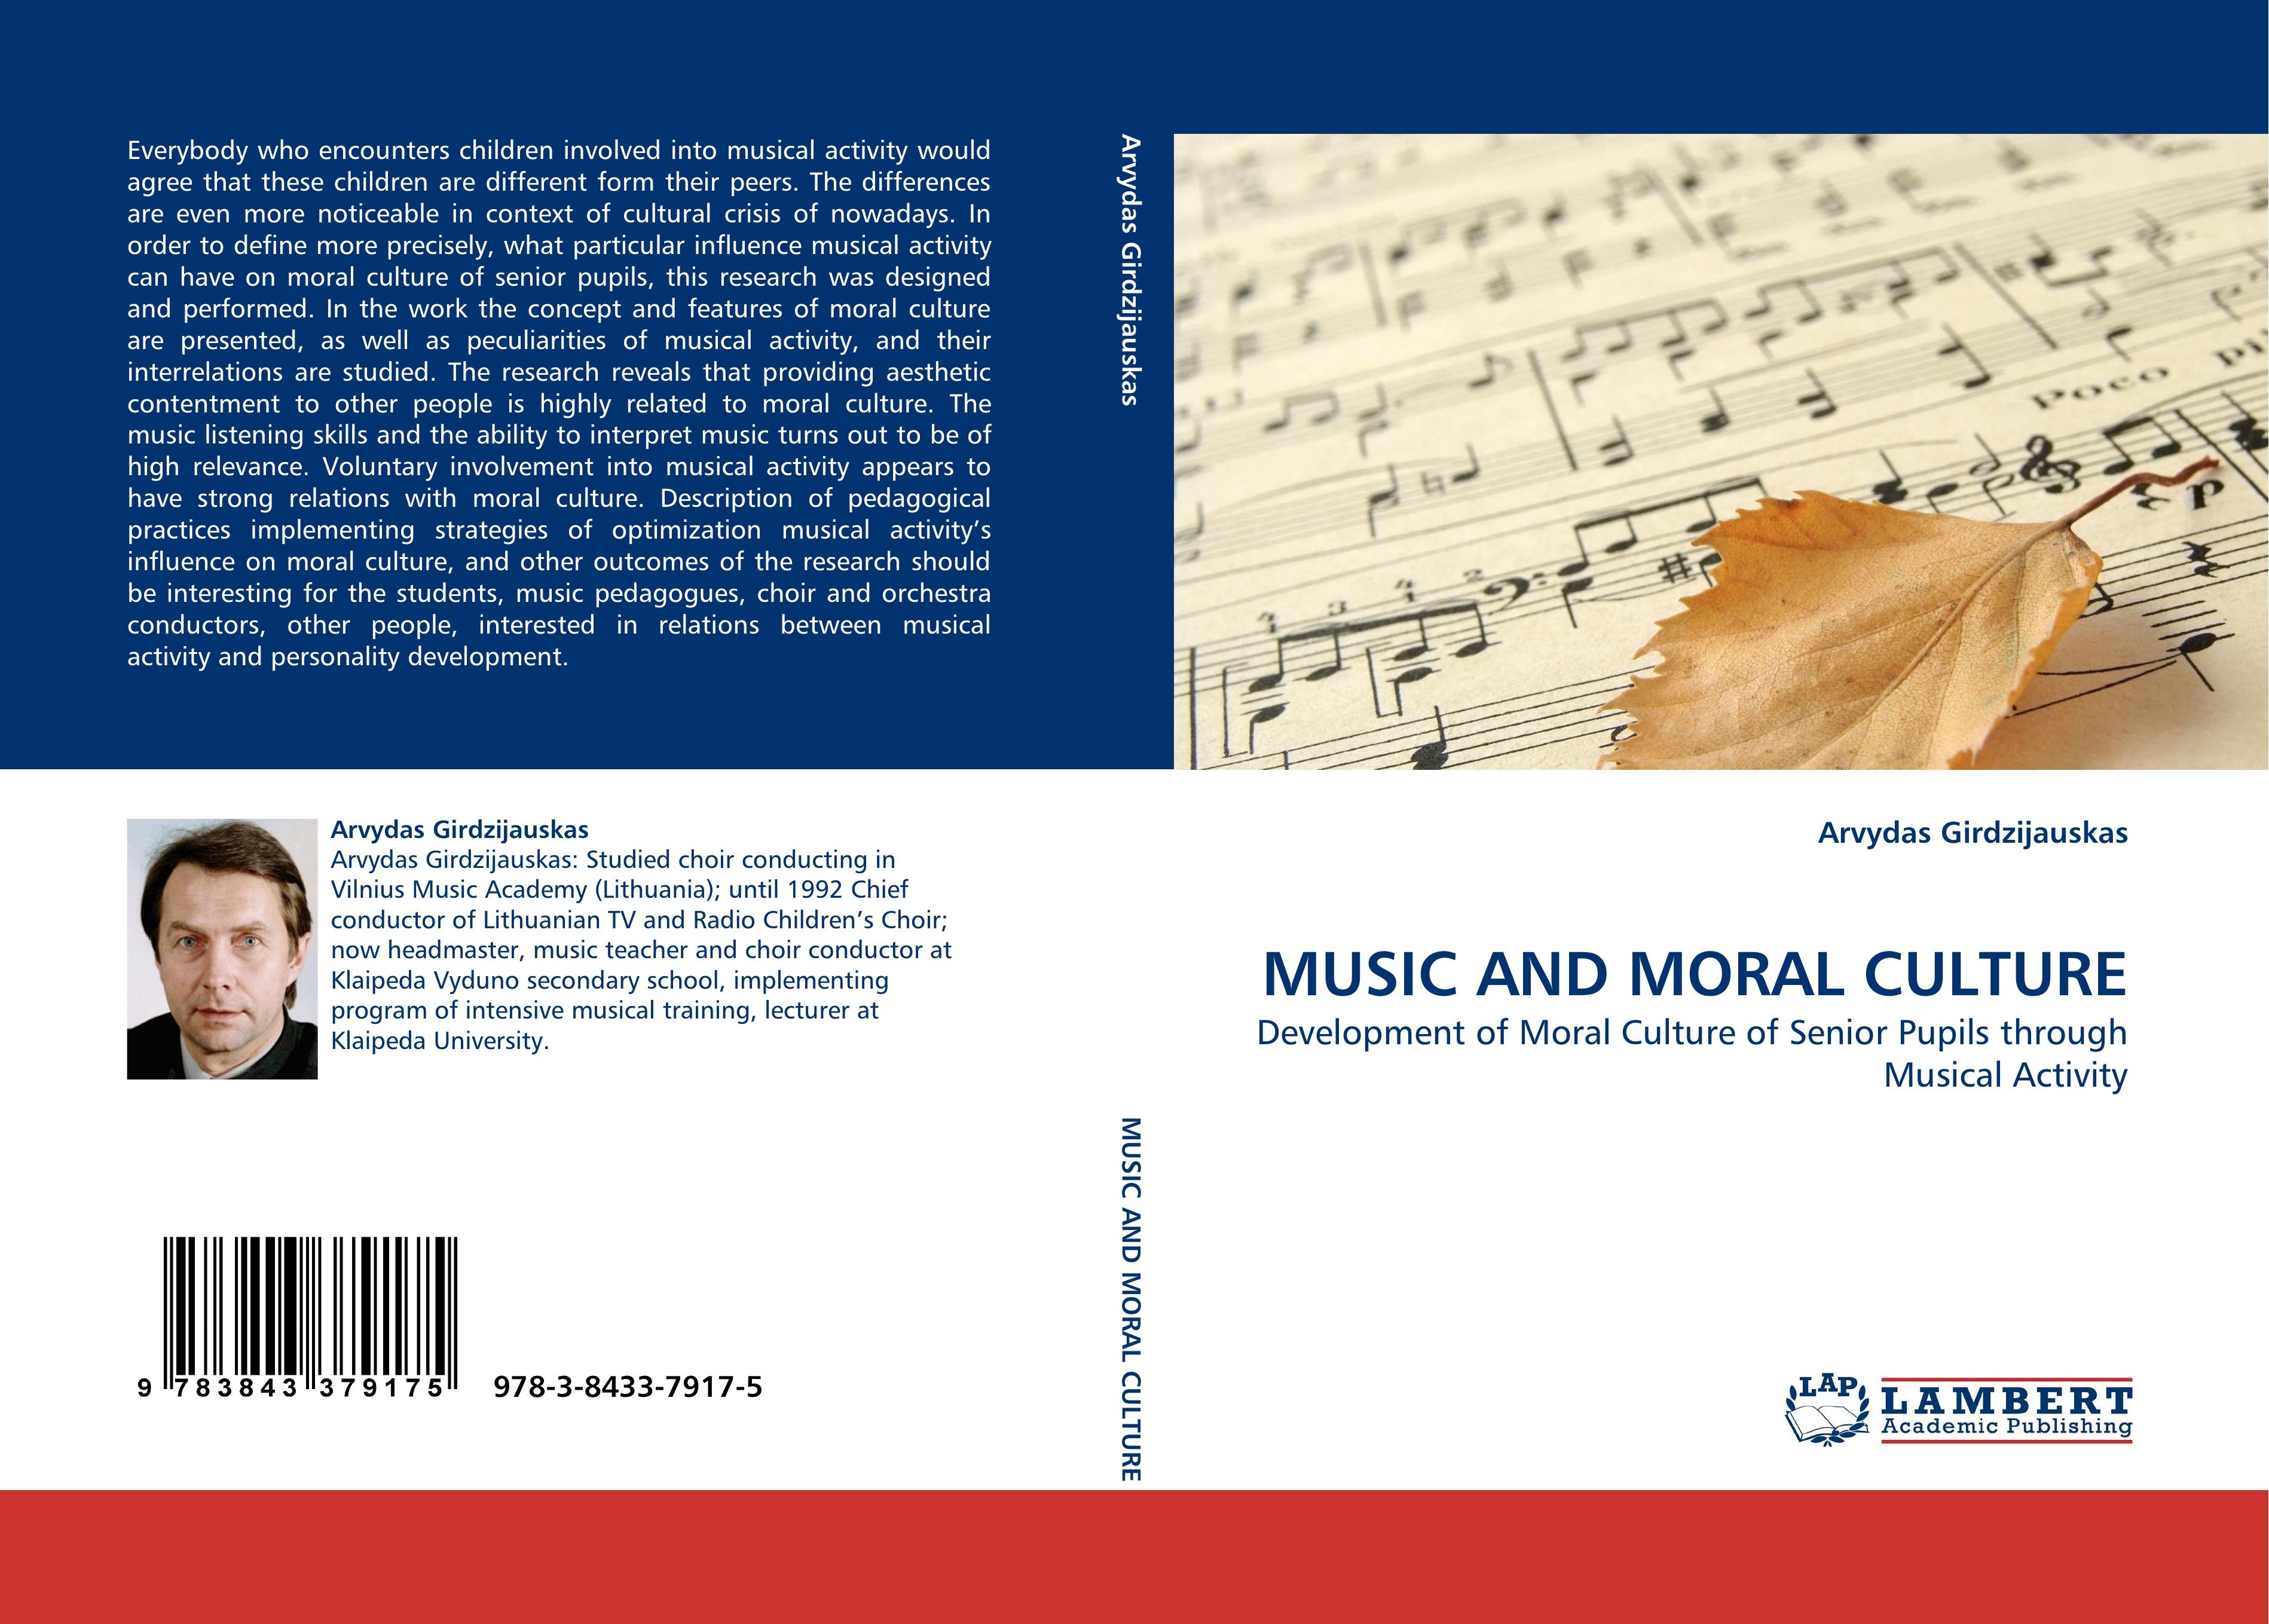 MUSIC AND MORAL CULTURE - Arvydas Girdzijauskas